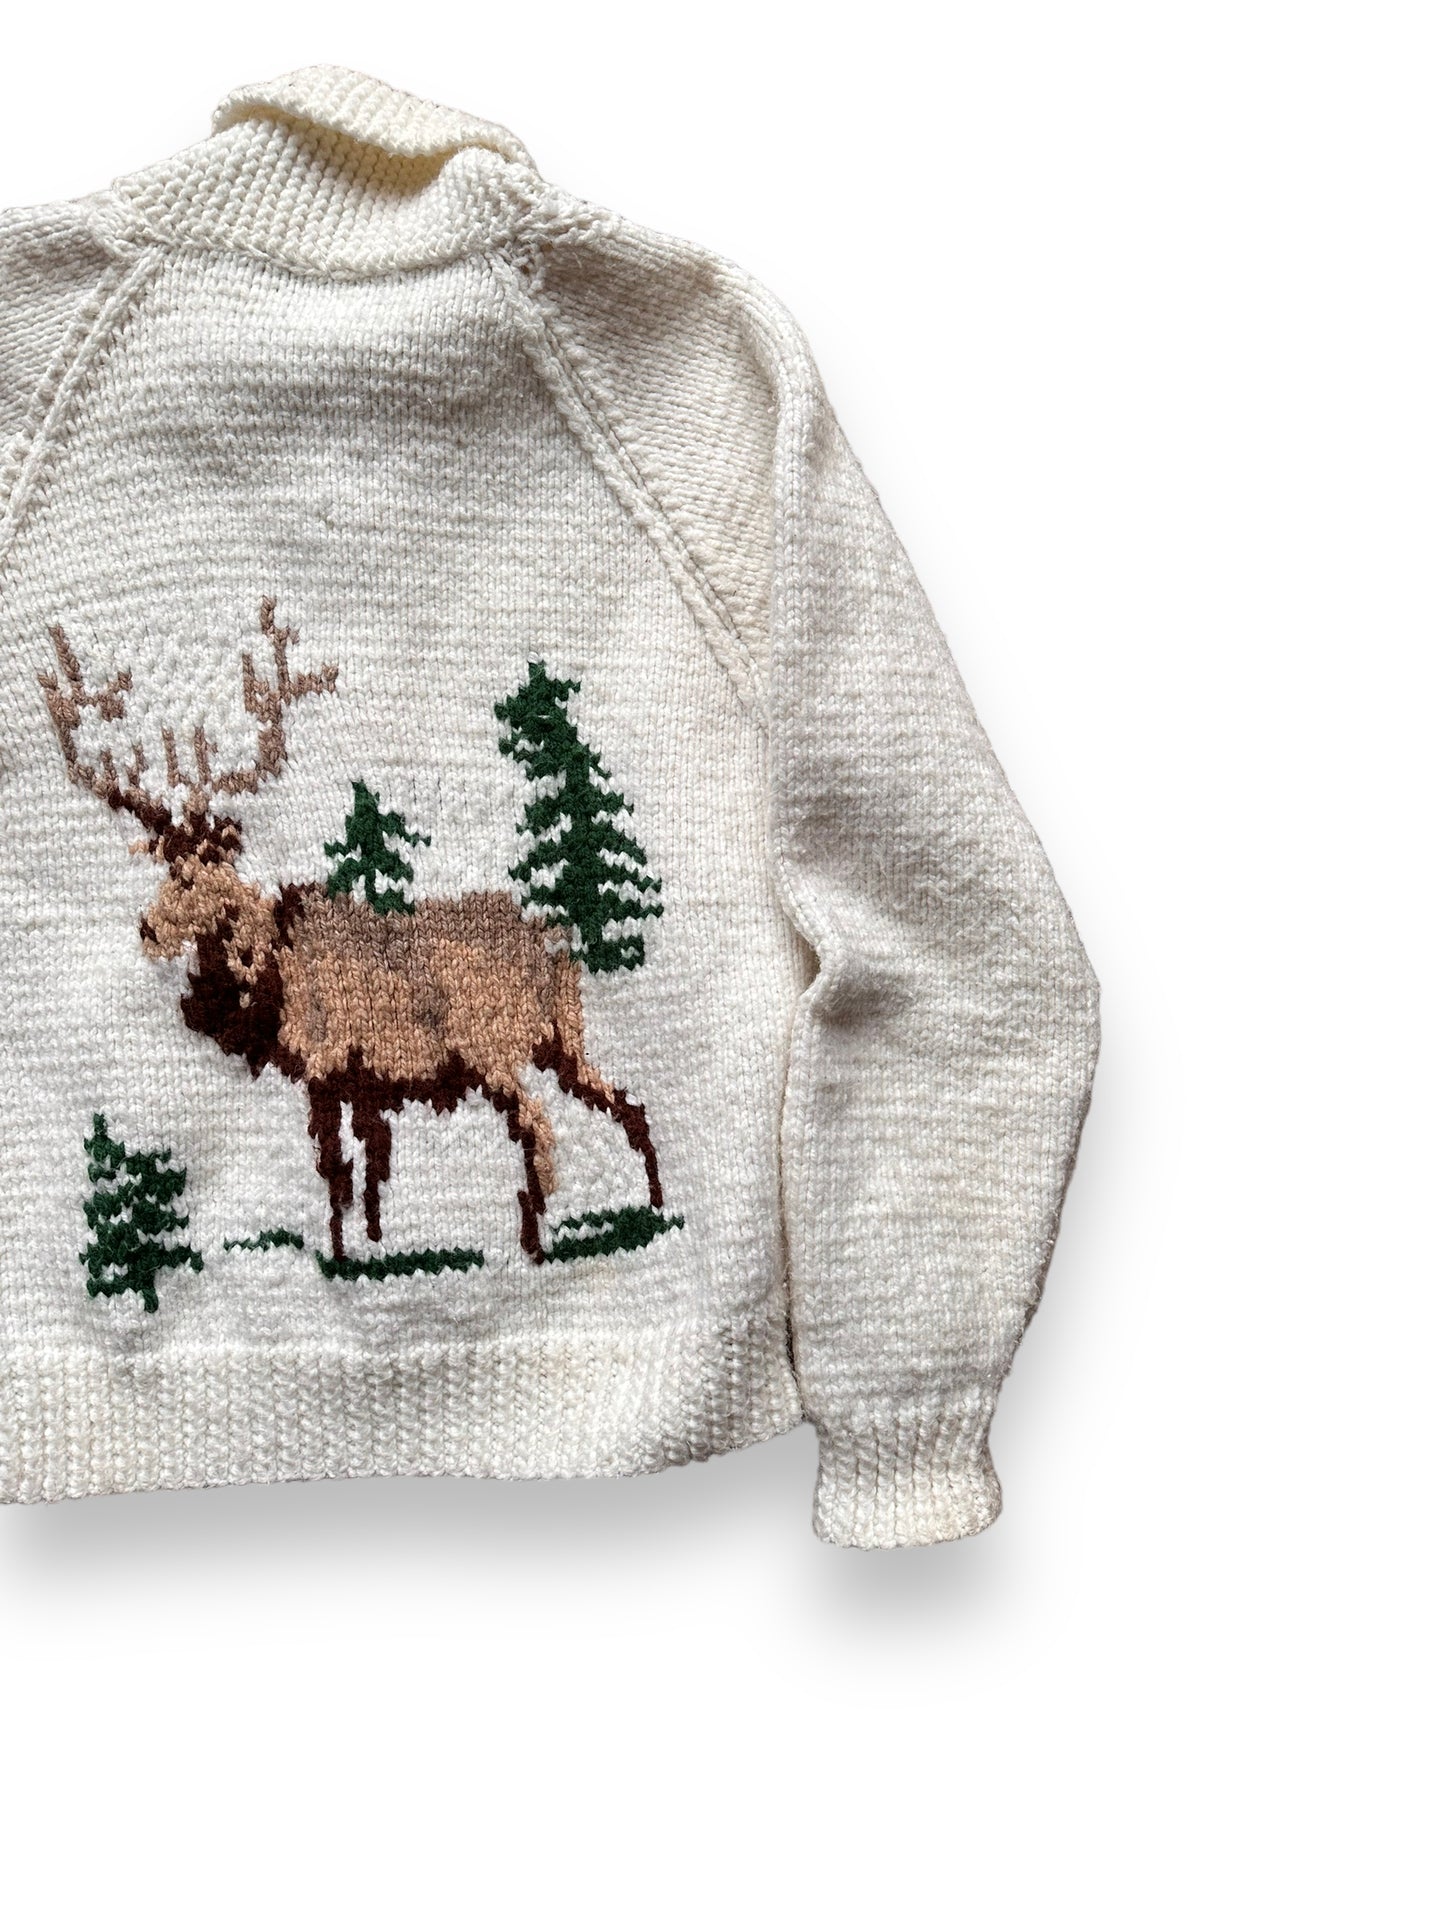 Rear Right View of Vintage Deer Wool Cowichan Style Sweater SZ M | Vintage Cowichan Sweaters Seattle | Barn Owl Vintage Seattle